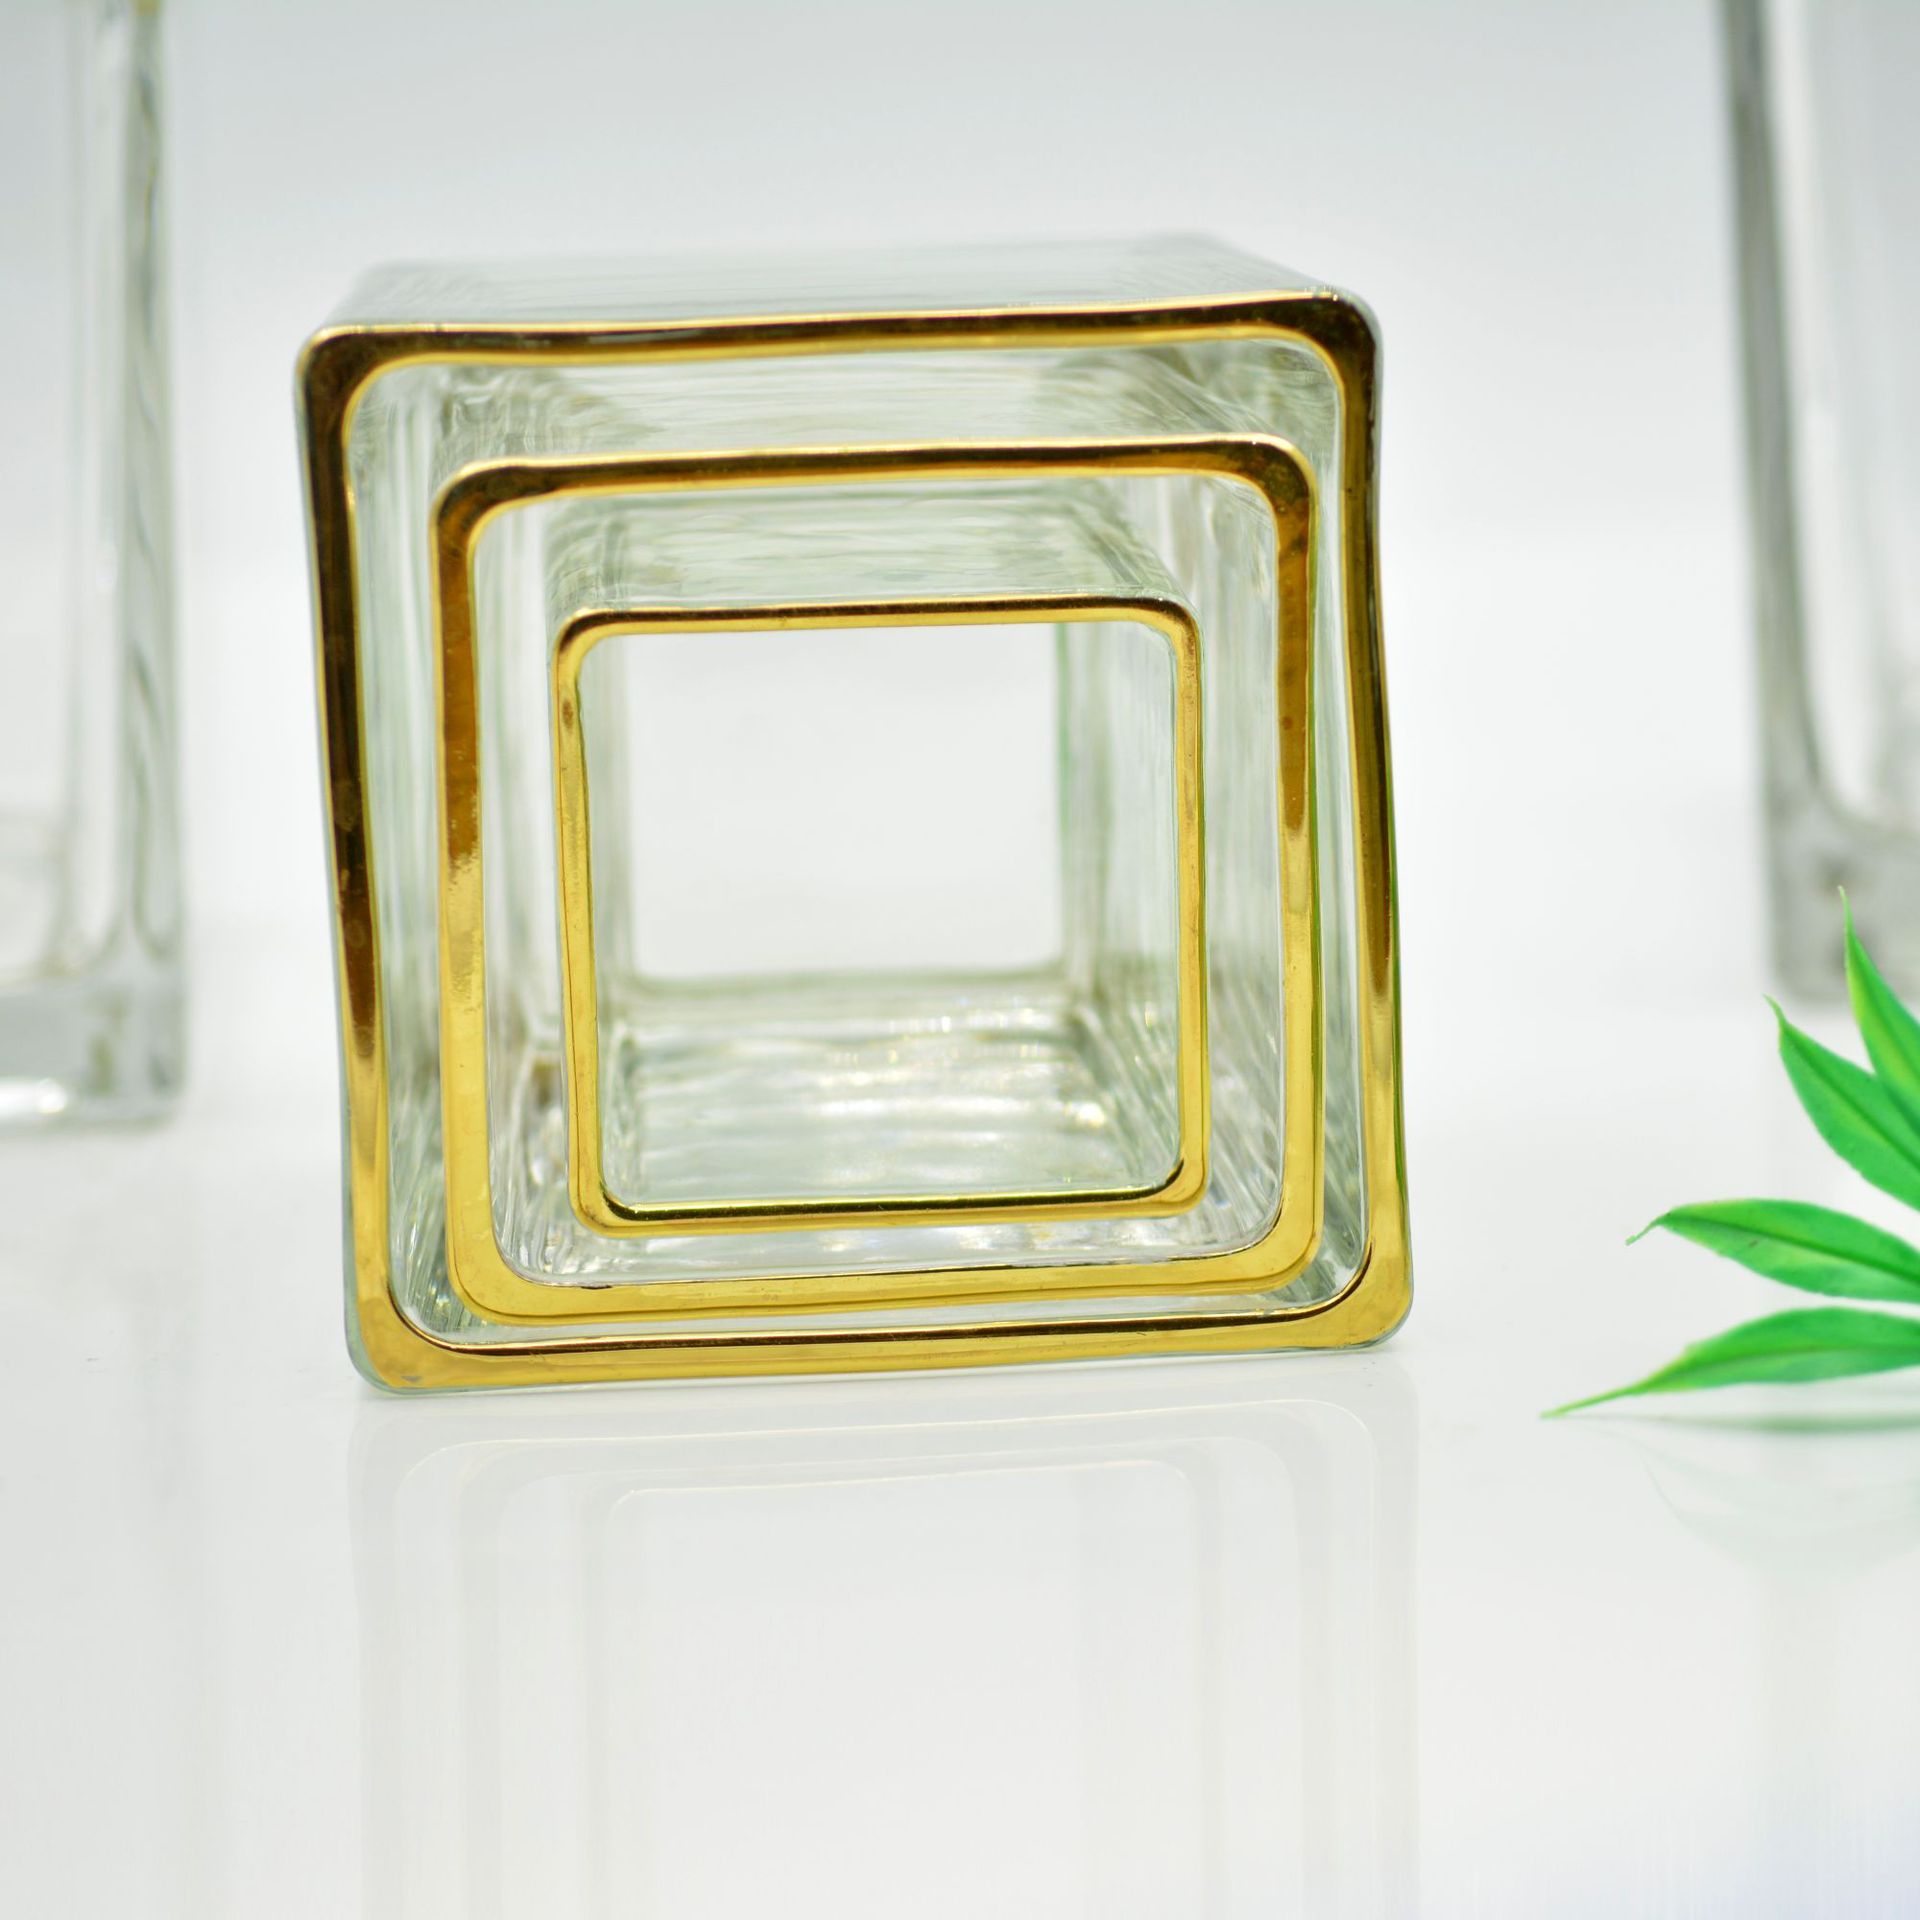 正方形玻璃烛台产品图